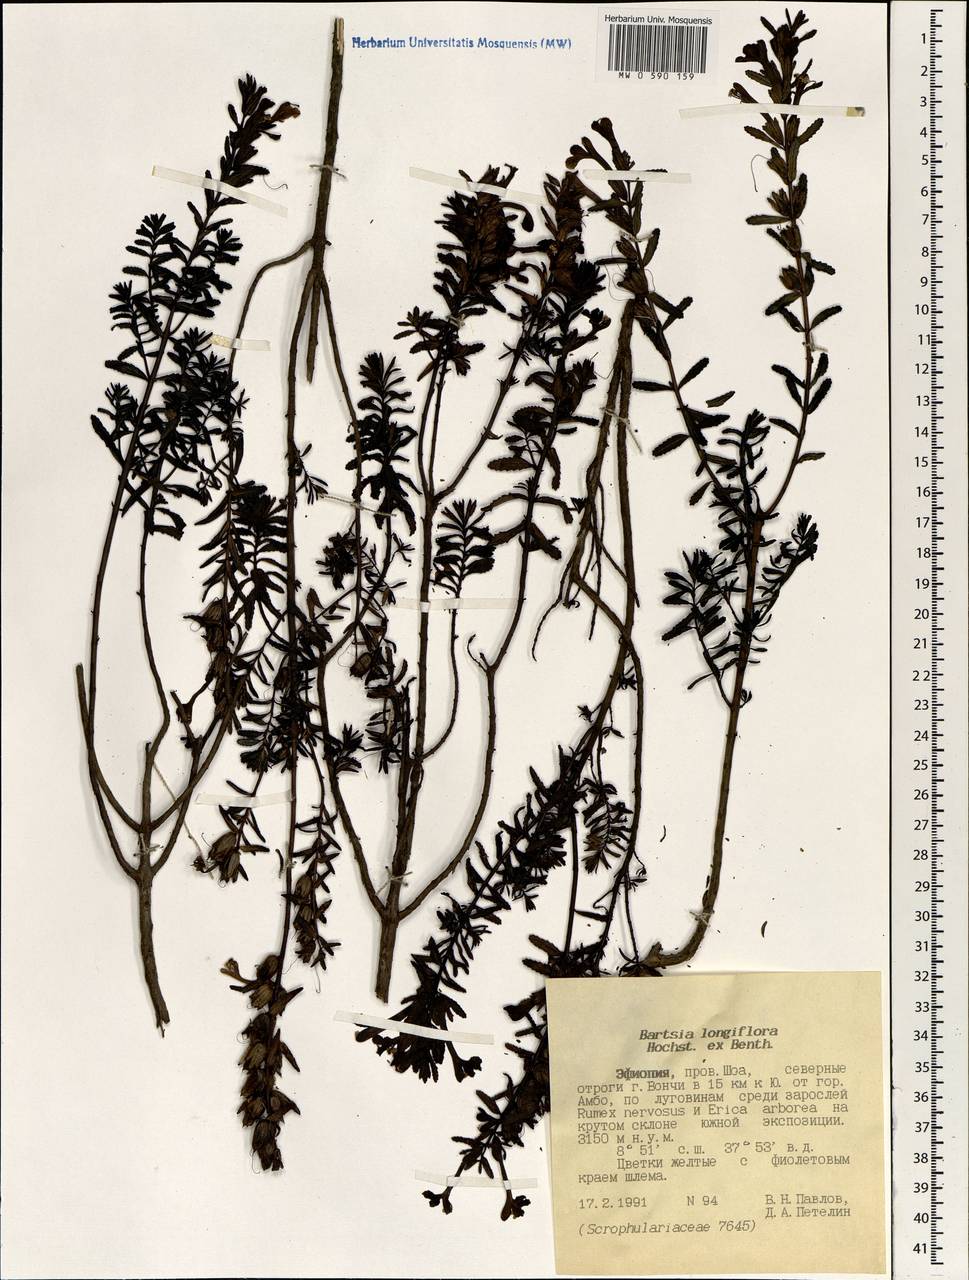 Hedbergia longiflora subsp. longiflora, Африка (AFR) (Эфиопия)